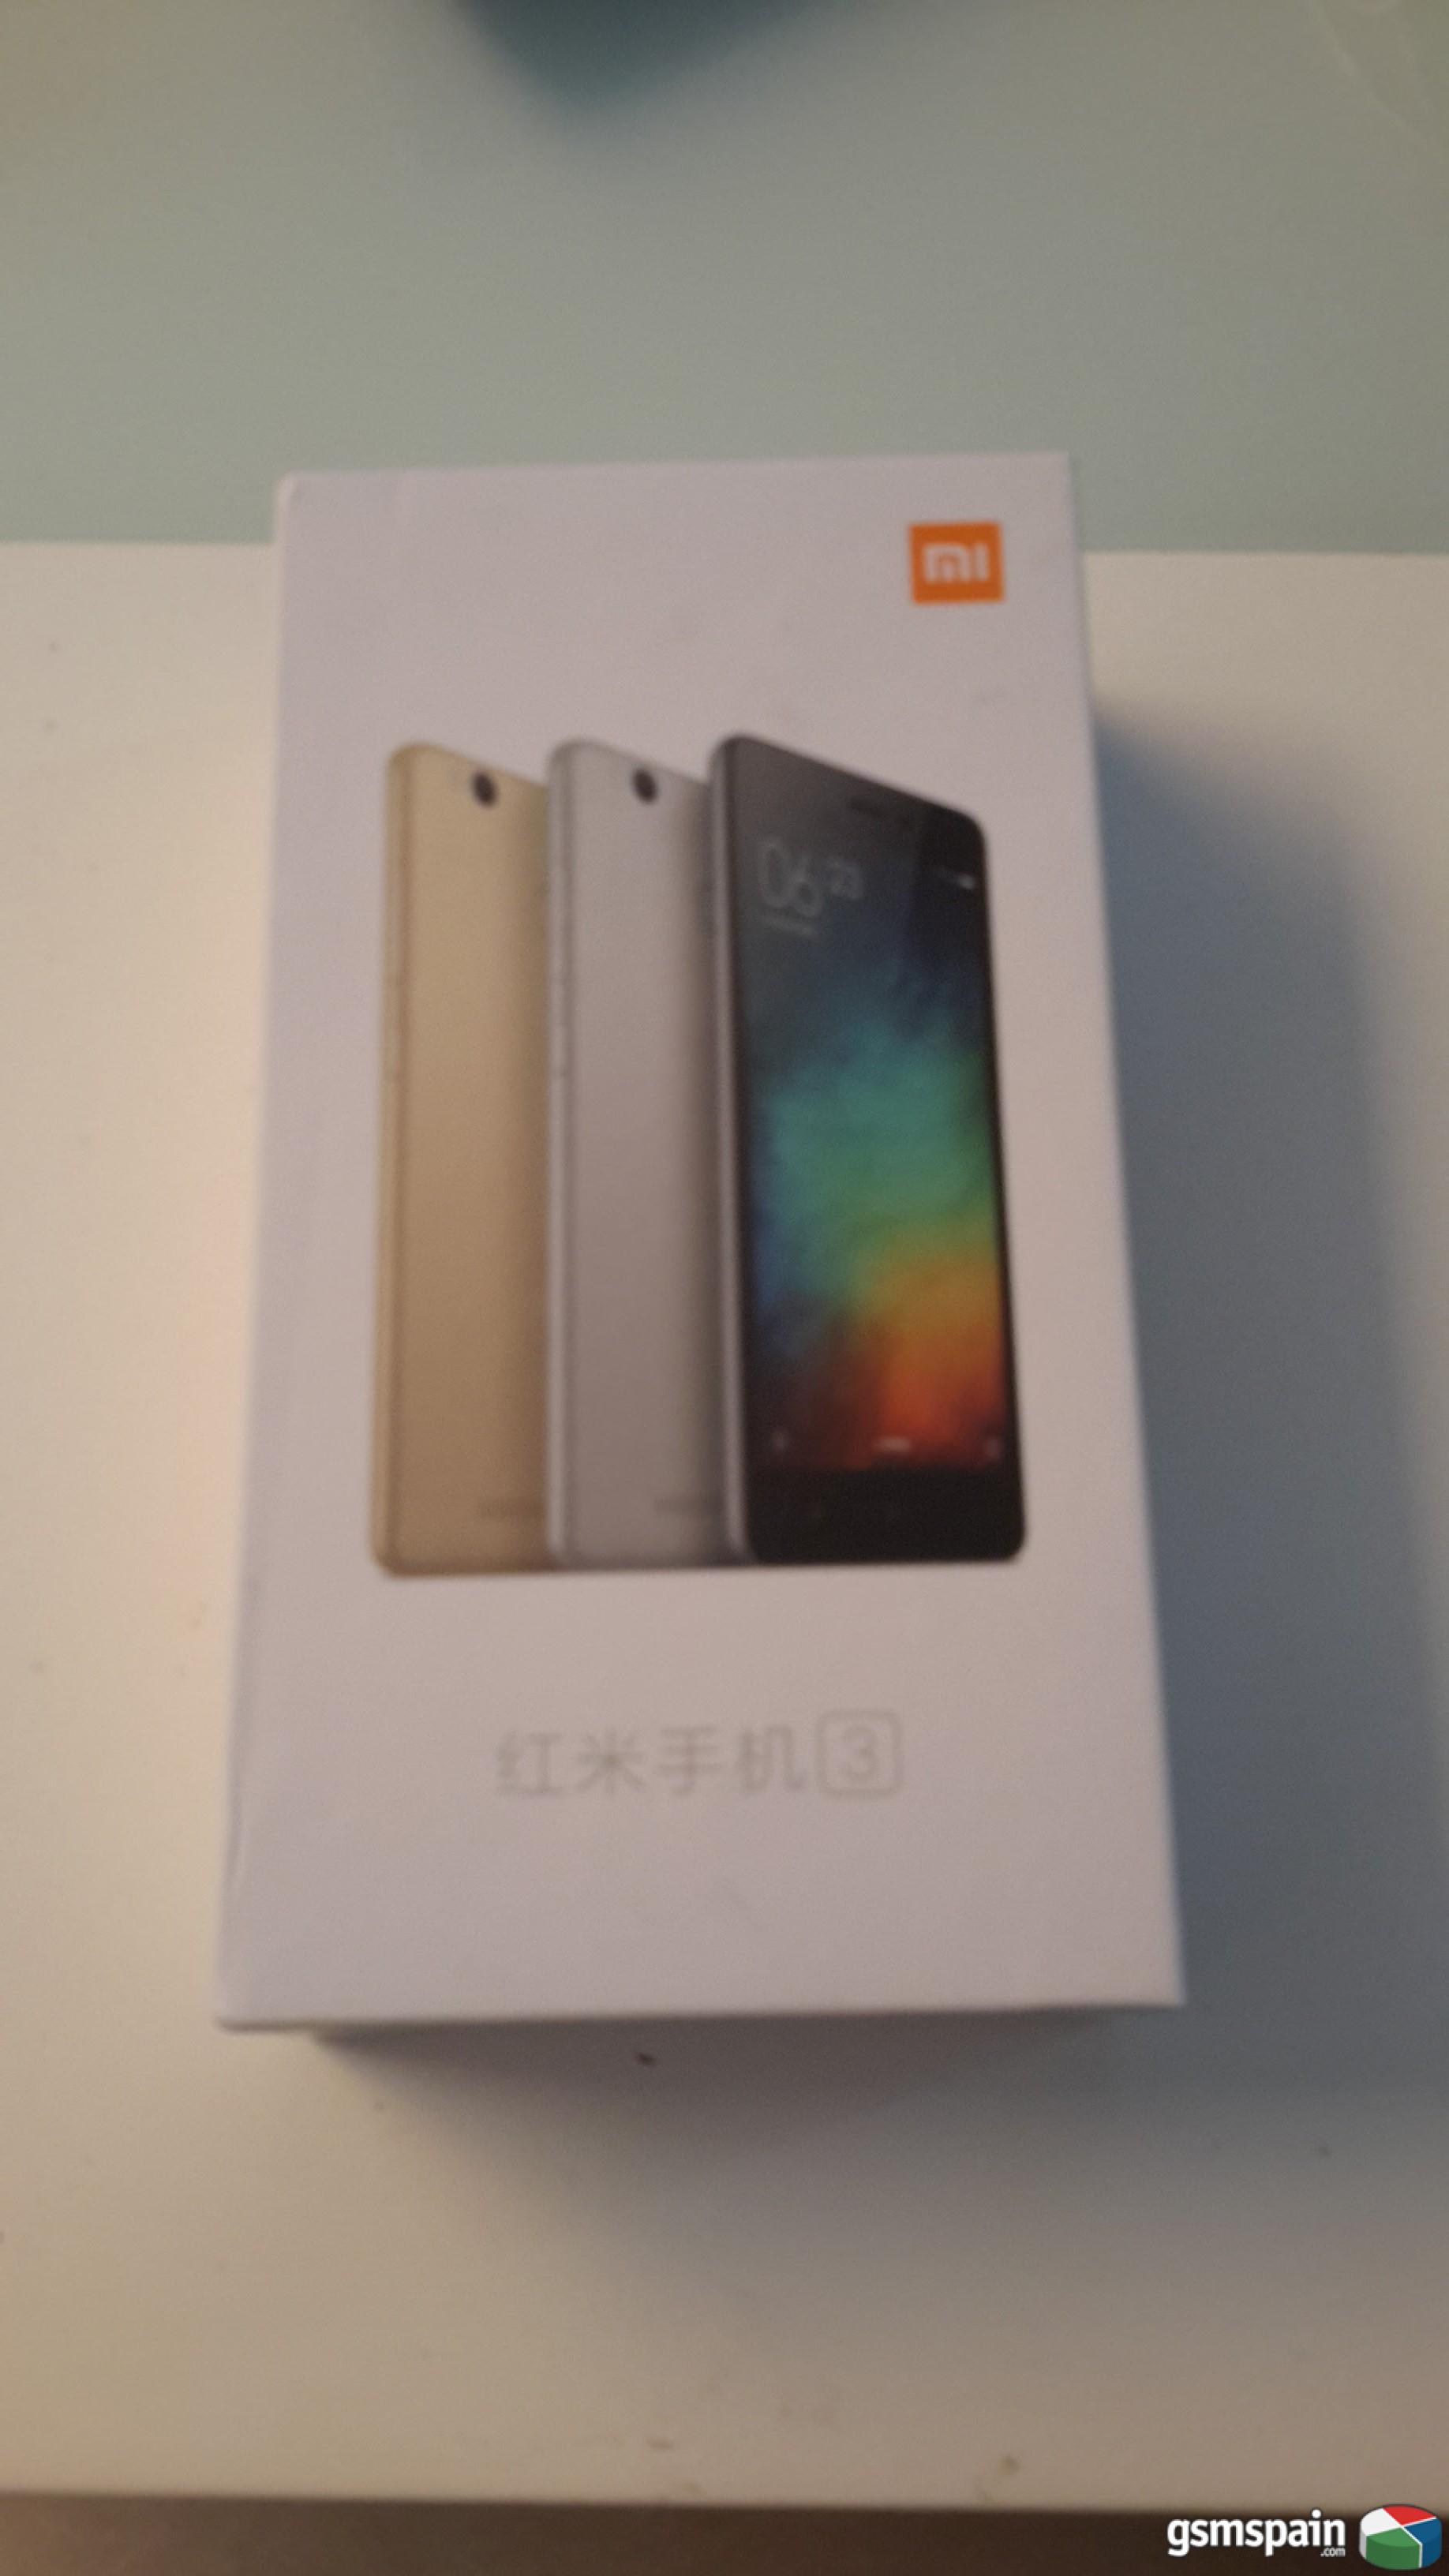 [VENDO] Xiaomi Redmi 3 pro GOLD, 3gb ram, 32 rom nuevo